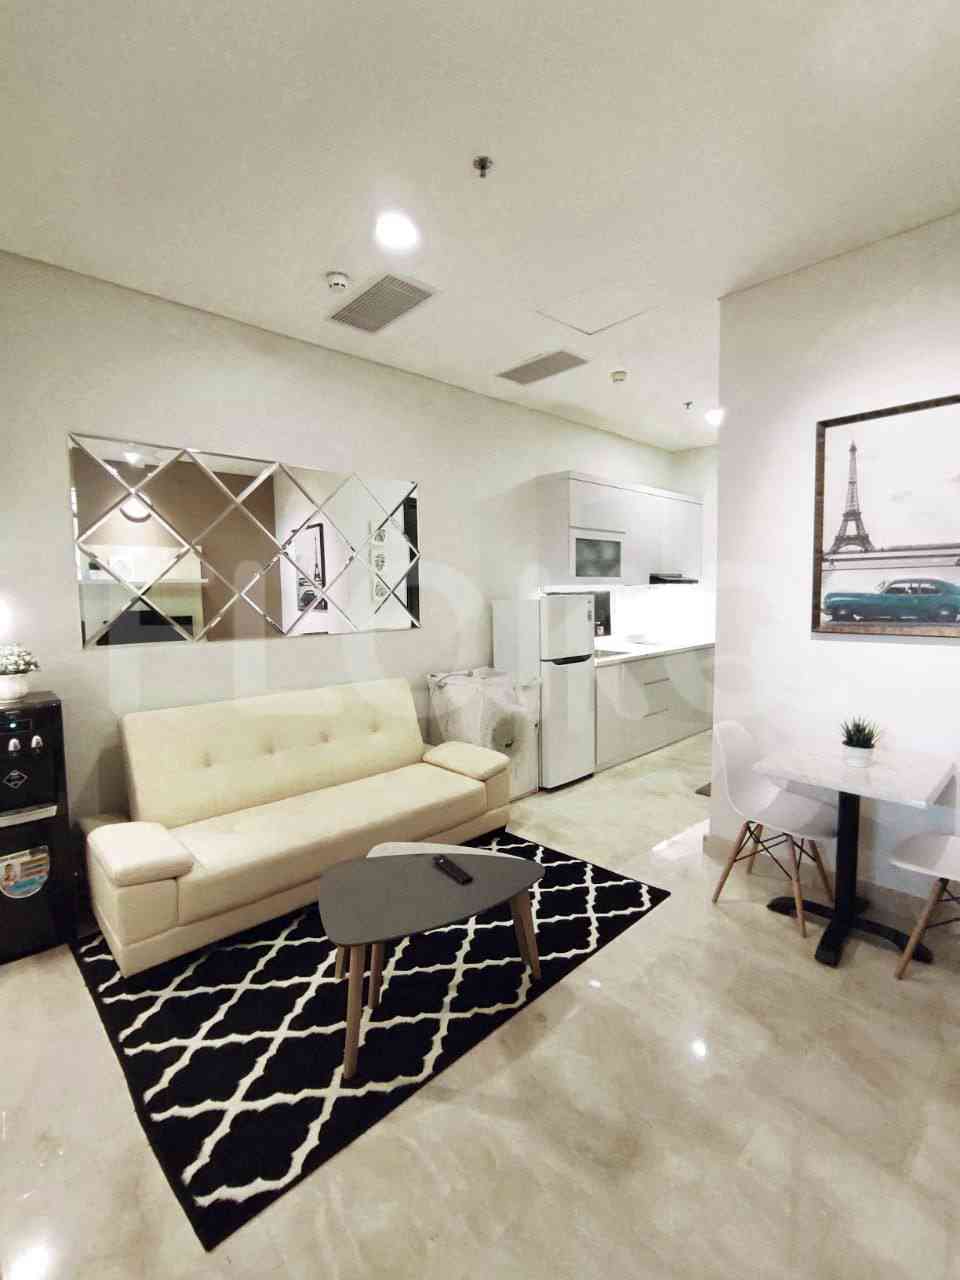 1 Bedroom on 20th Floor for Rent in Sudirman Suites Jakarta - fsu667 4